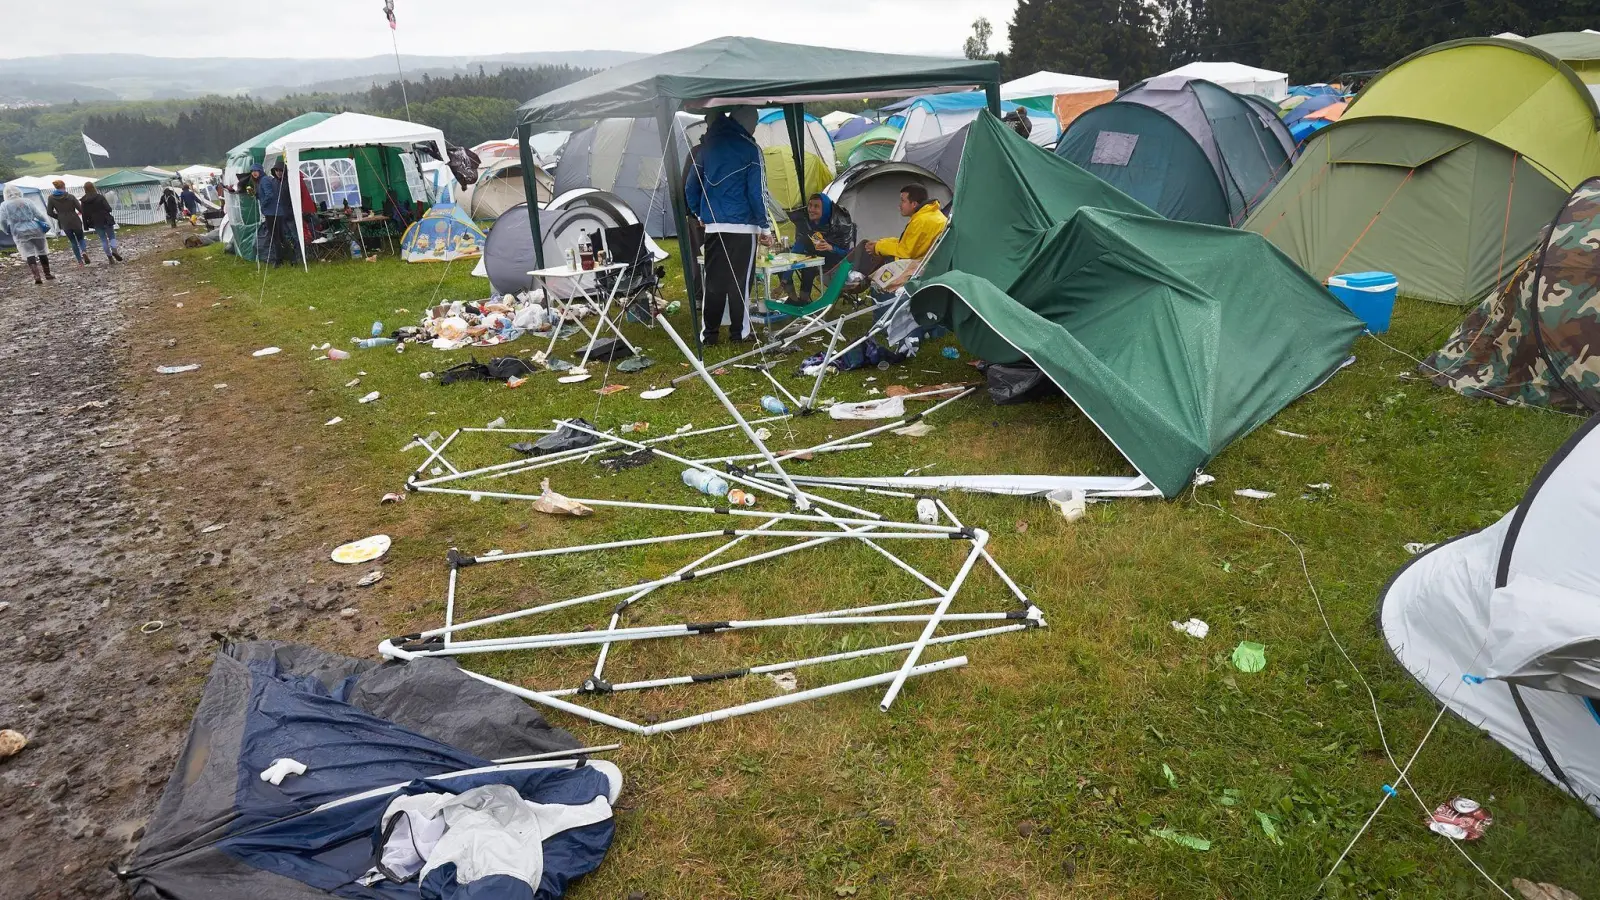 Umweltfreundliche Initiative: Bei „Rock am Ring“ zurückgelassene Zelte bekommen ein zweites Leben. (Foto: Thomas Frey/dpa)